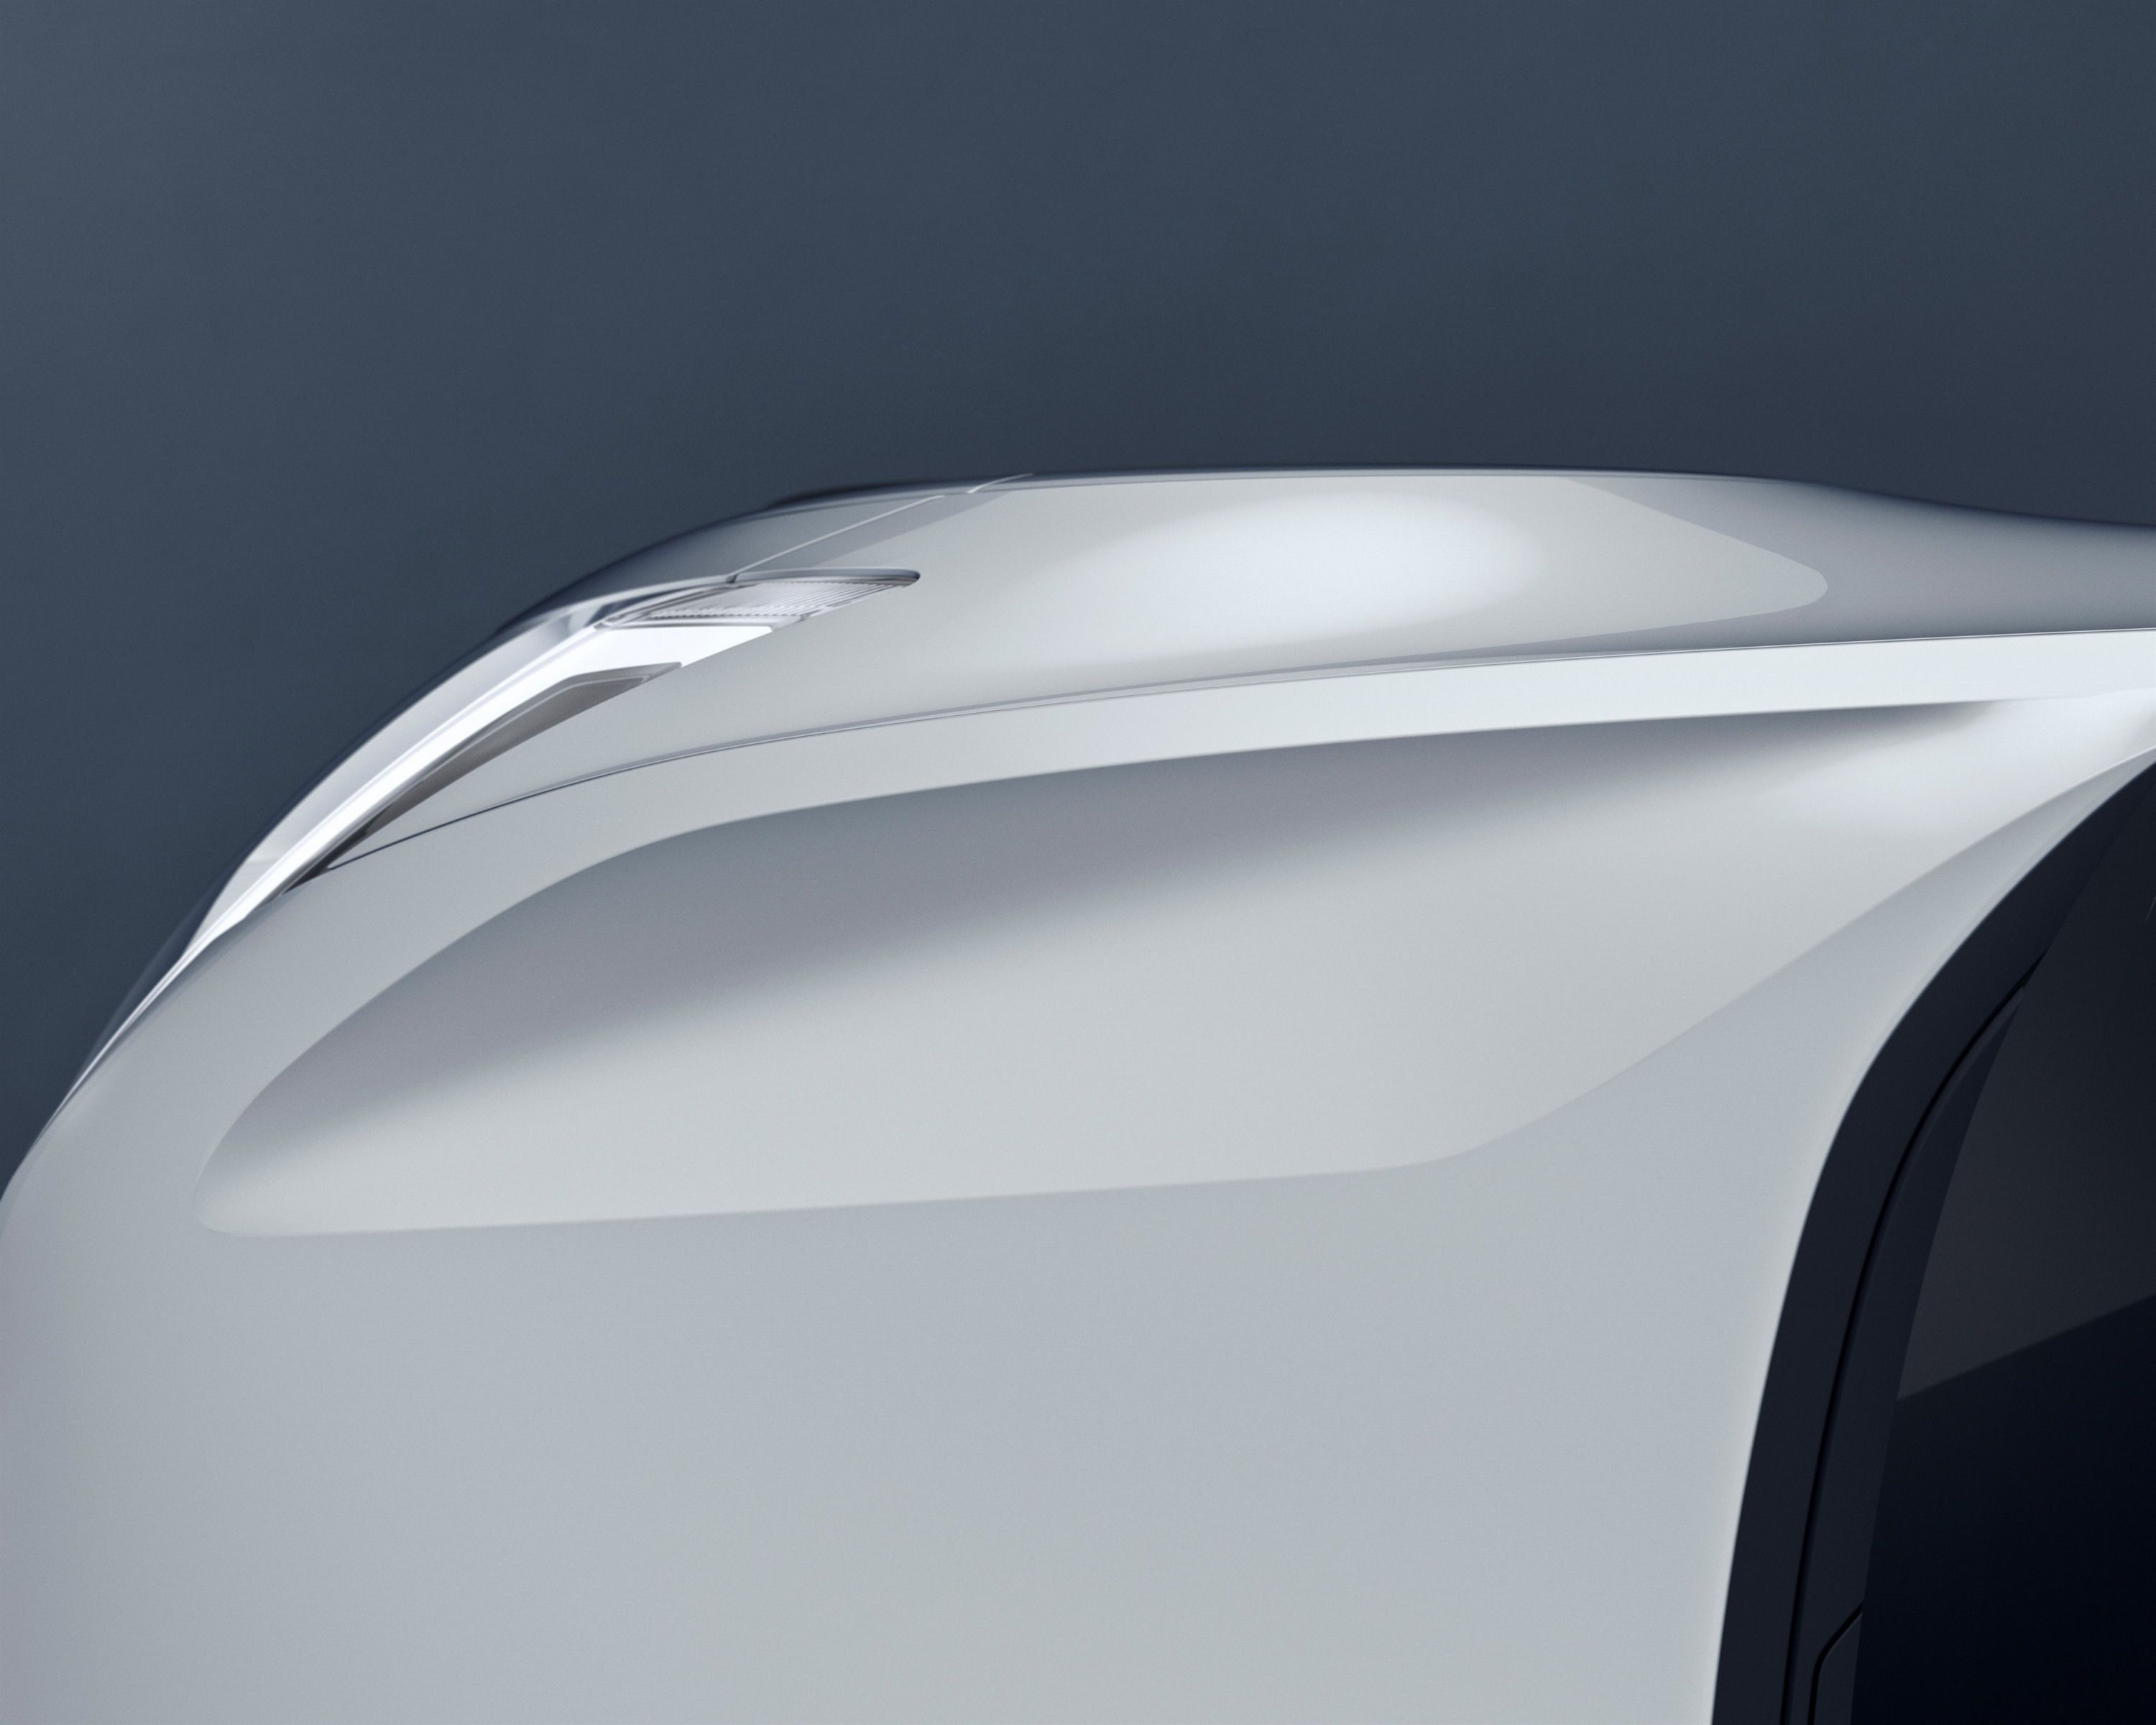 2016 Volvo Concept 40